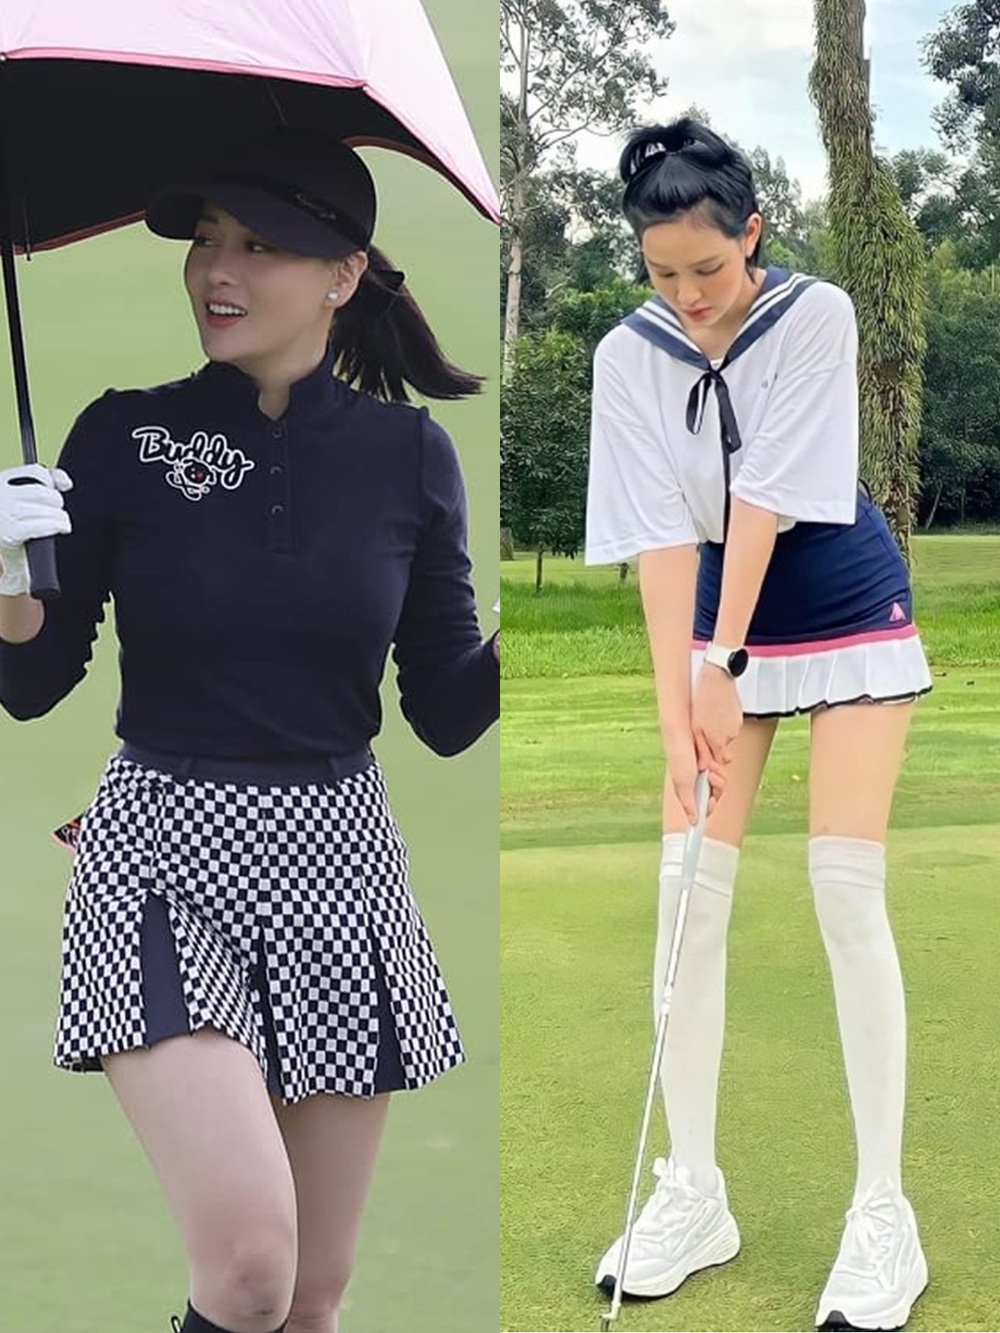  
Phương Oanh, Hiền Hồ đam mê chơi golf giống nhau. (Ảnh: Facebook Phương Oanh + Hiền Hồ)